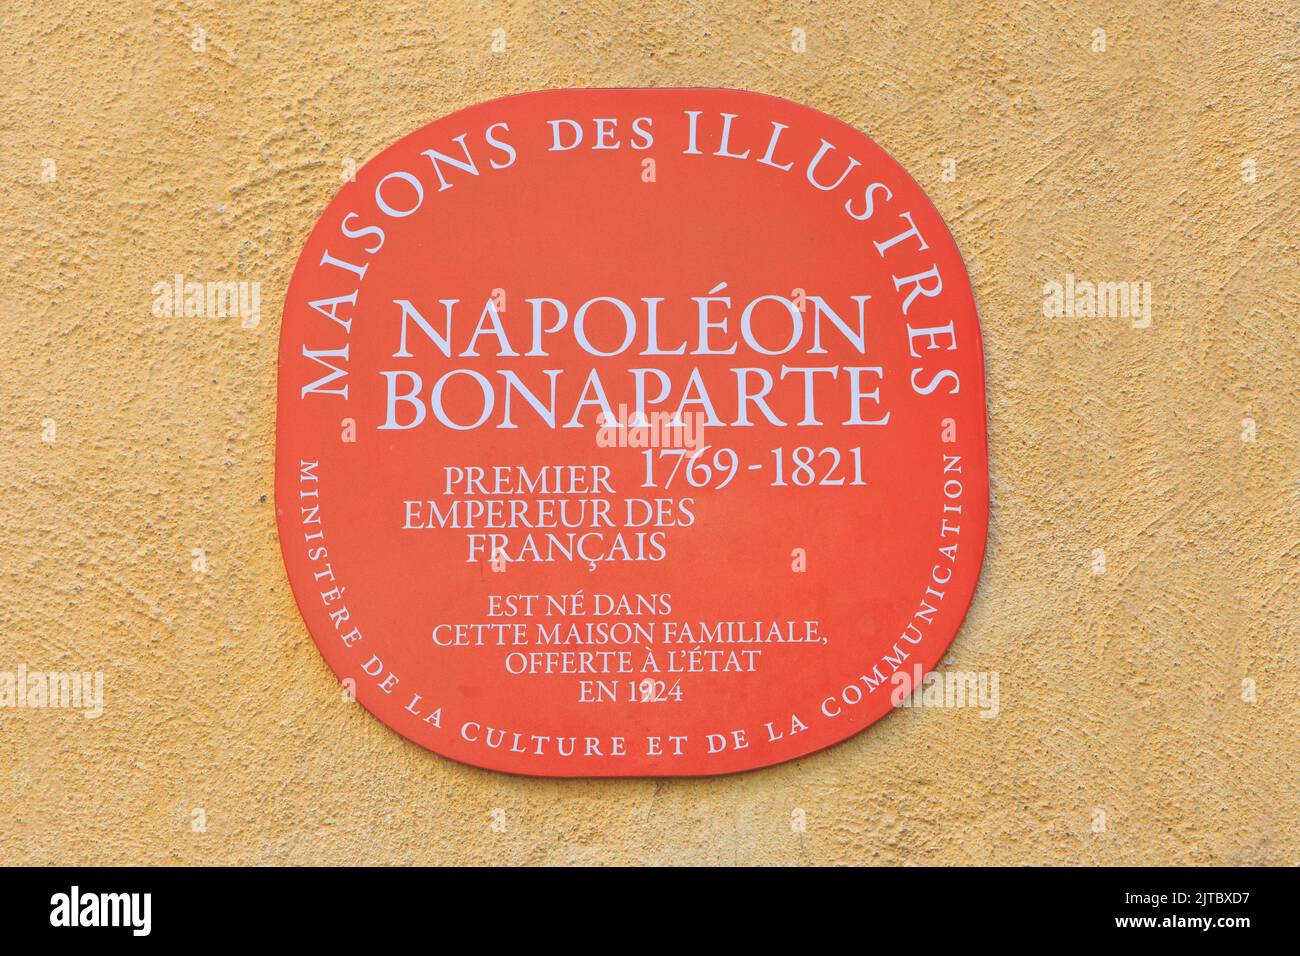 Gedenktafel vor dem Geburtsort des französischen Imperators Napoleon I. (1769-1821) in Ajacio (Corse-du-Sud) auf der Insel Korsika, Frankreich Stockfoto